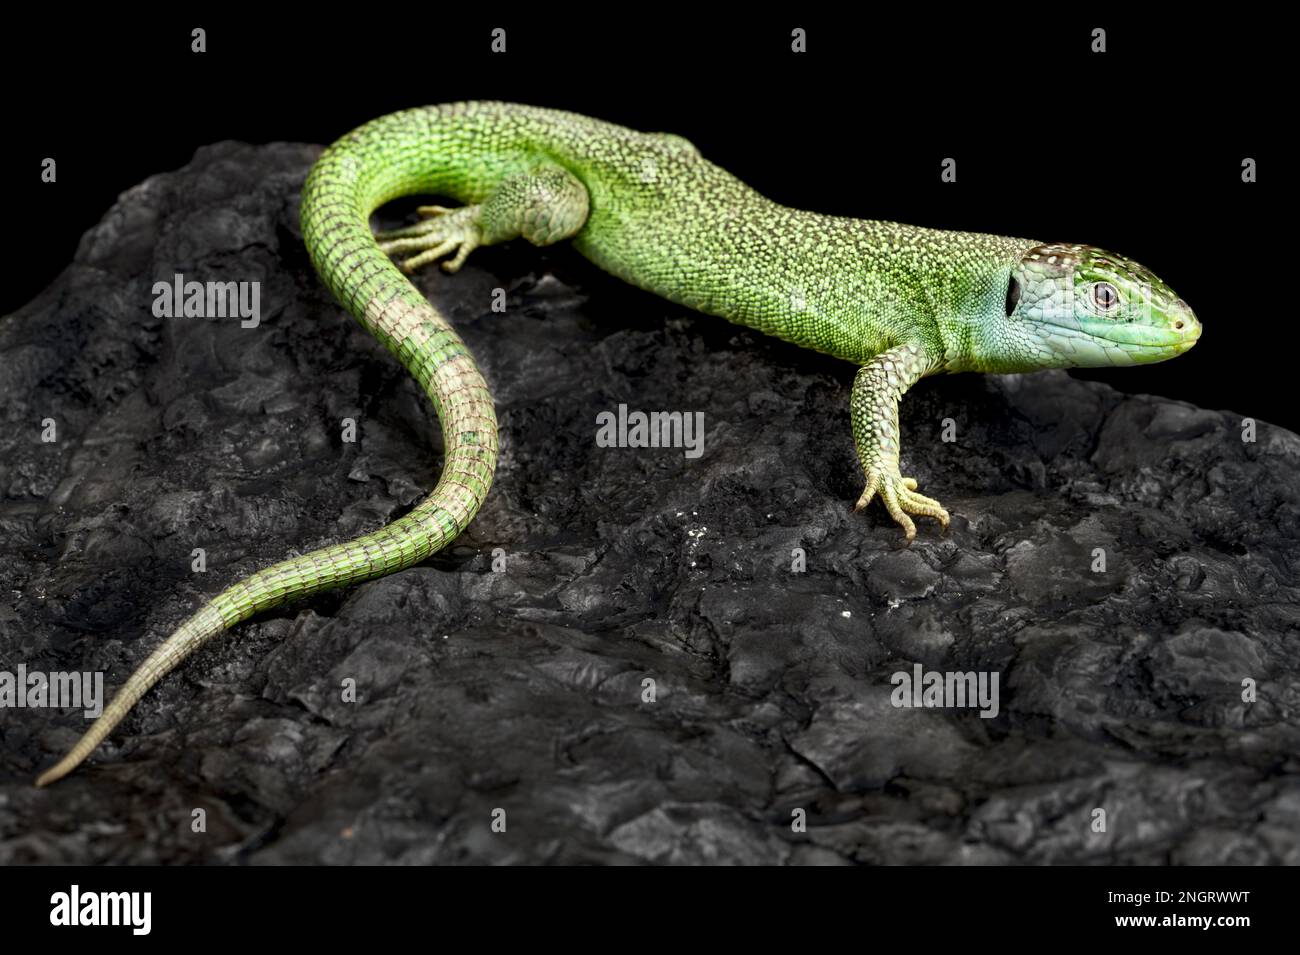 Western green lizard (Lacerta bilineata) Stock Photo